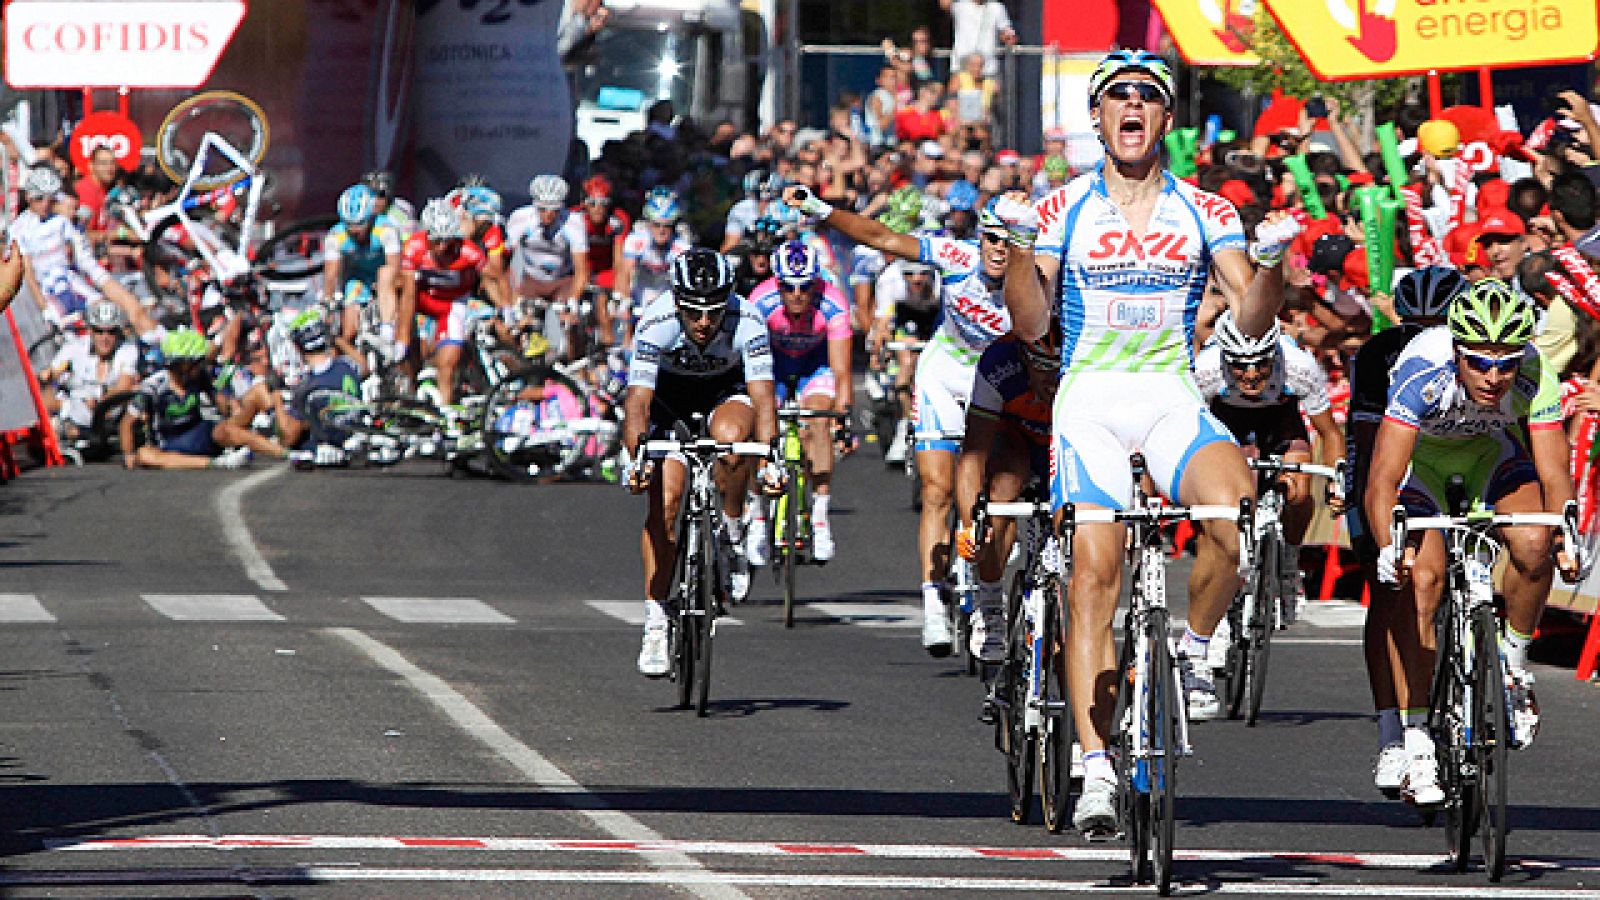 Una caída ha marcado el final de la séptima etapa de la Vuelta con final en Talavera de la Reina, donde se ha impuesto el corredor del Skil Marcel Kittel. Corredores importantes como 'Purito' Rodríguez o Tyler Farrar se han visto involucrados.